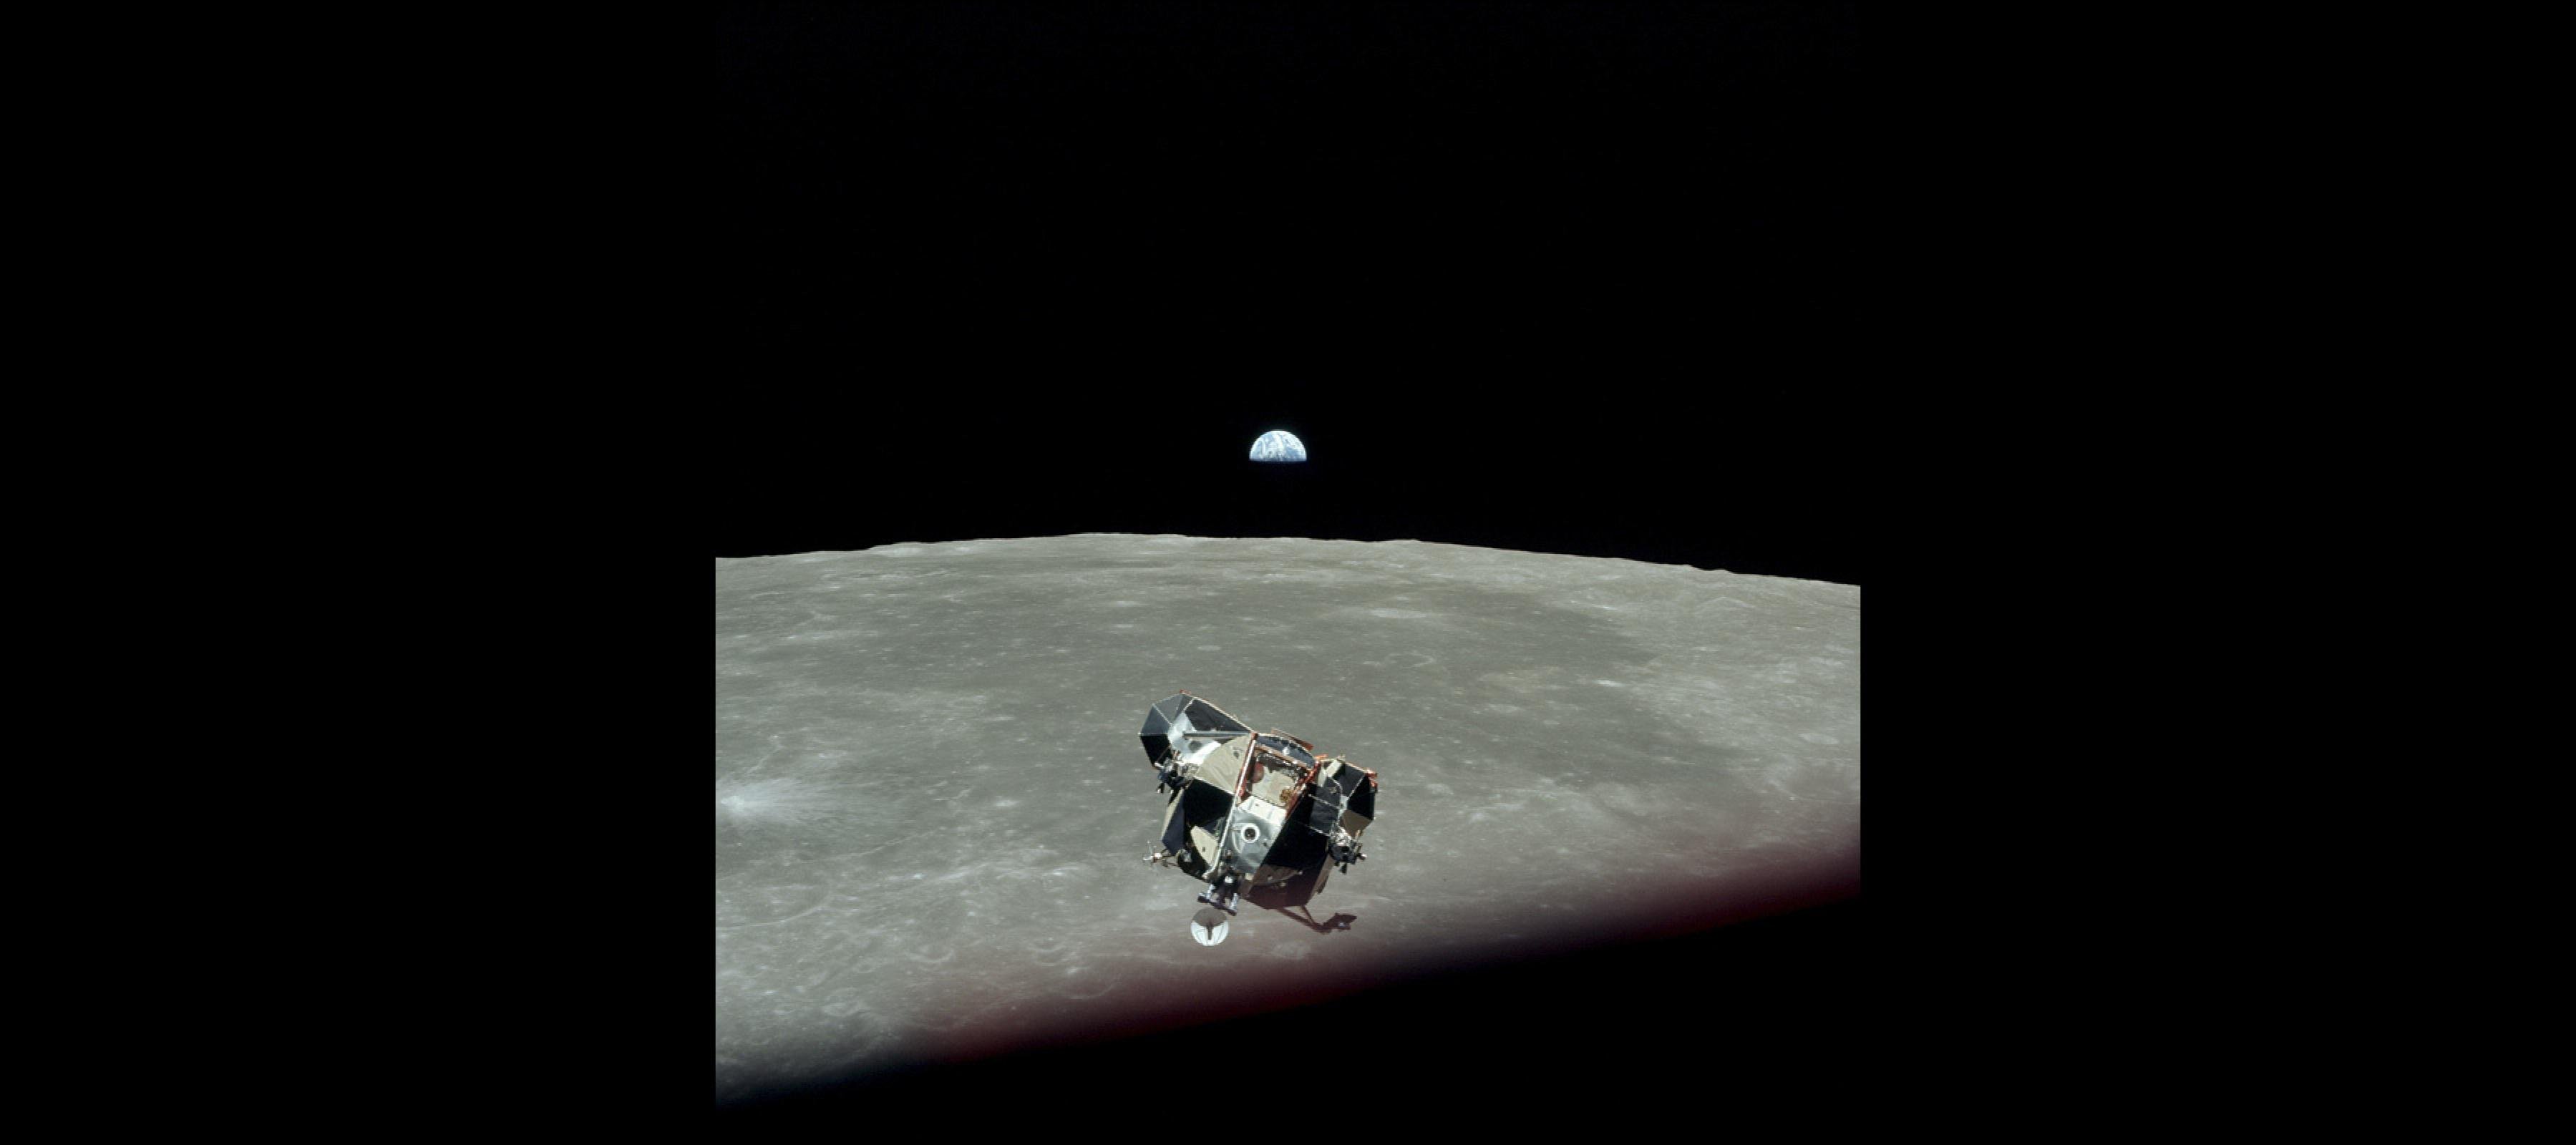 Ein legendäres Foto der Mission Apollo 11: die Erde winzig klein hinter dem Mondhorizont – und im Vordergrund die Landefähre „Eagle“.